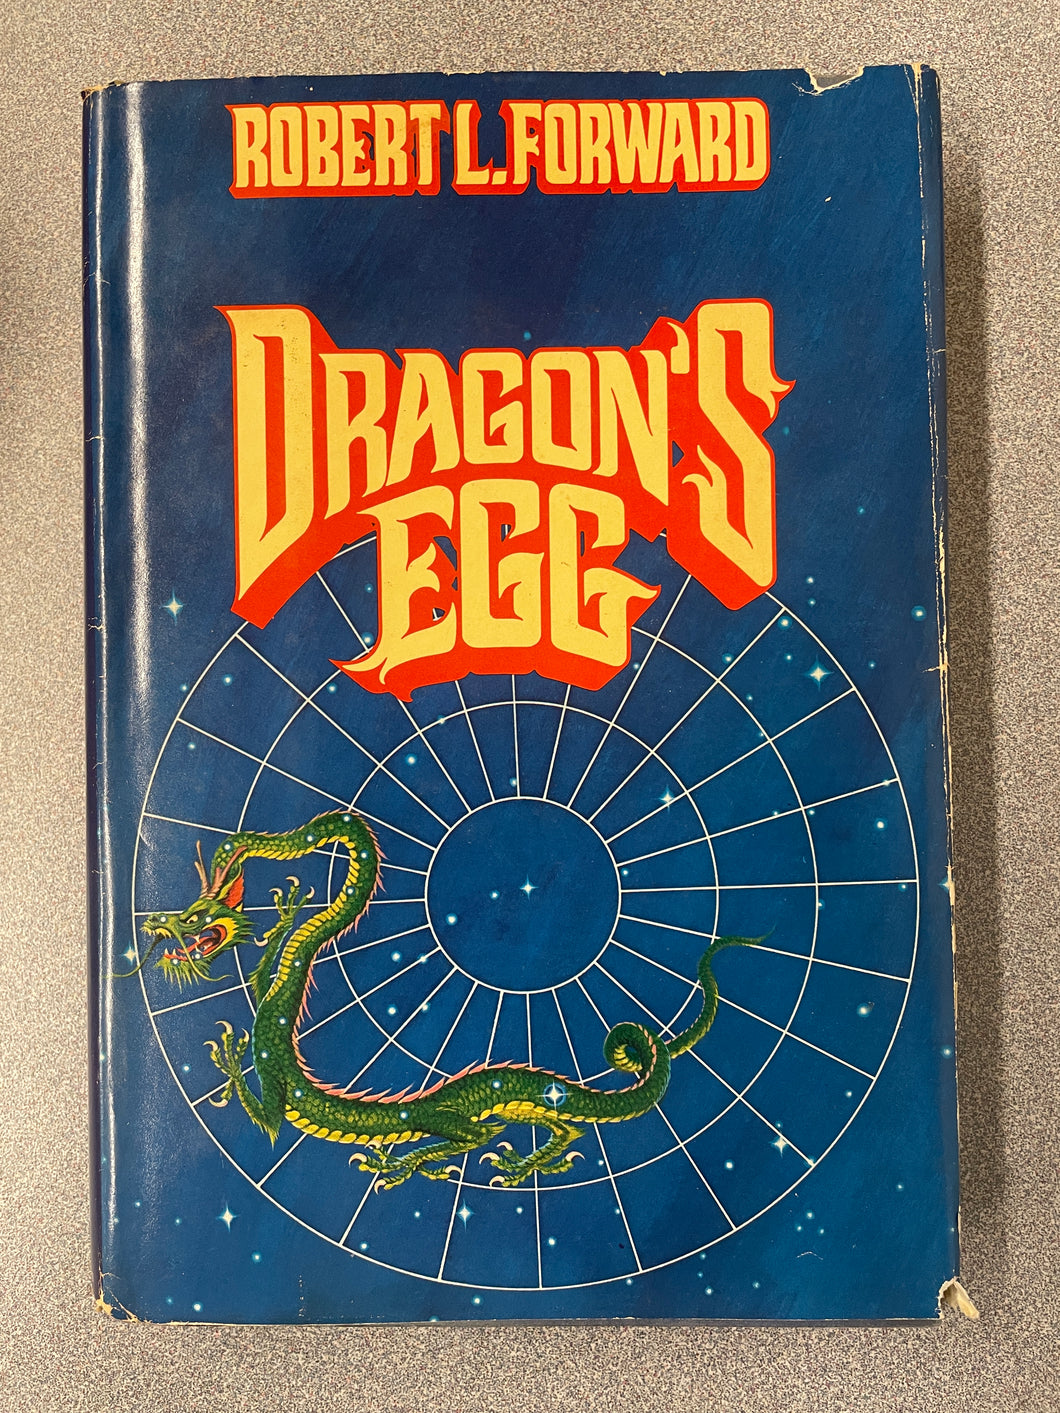 Forward, Robert L., Dragon's Egg [1980] CC 4/24